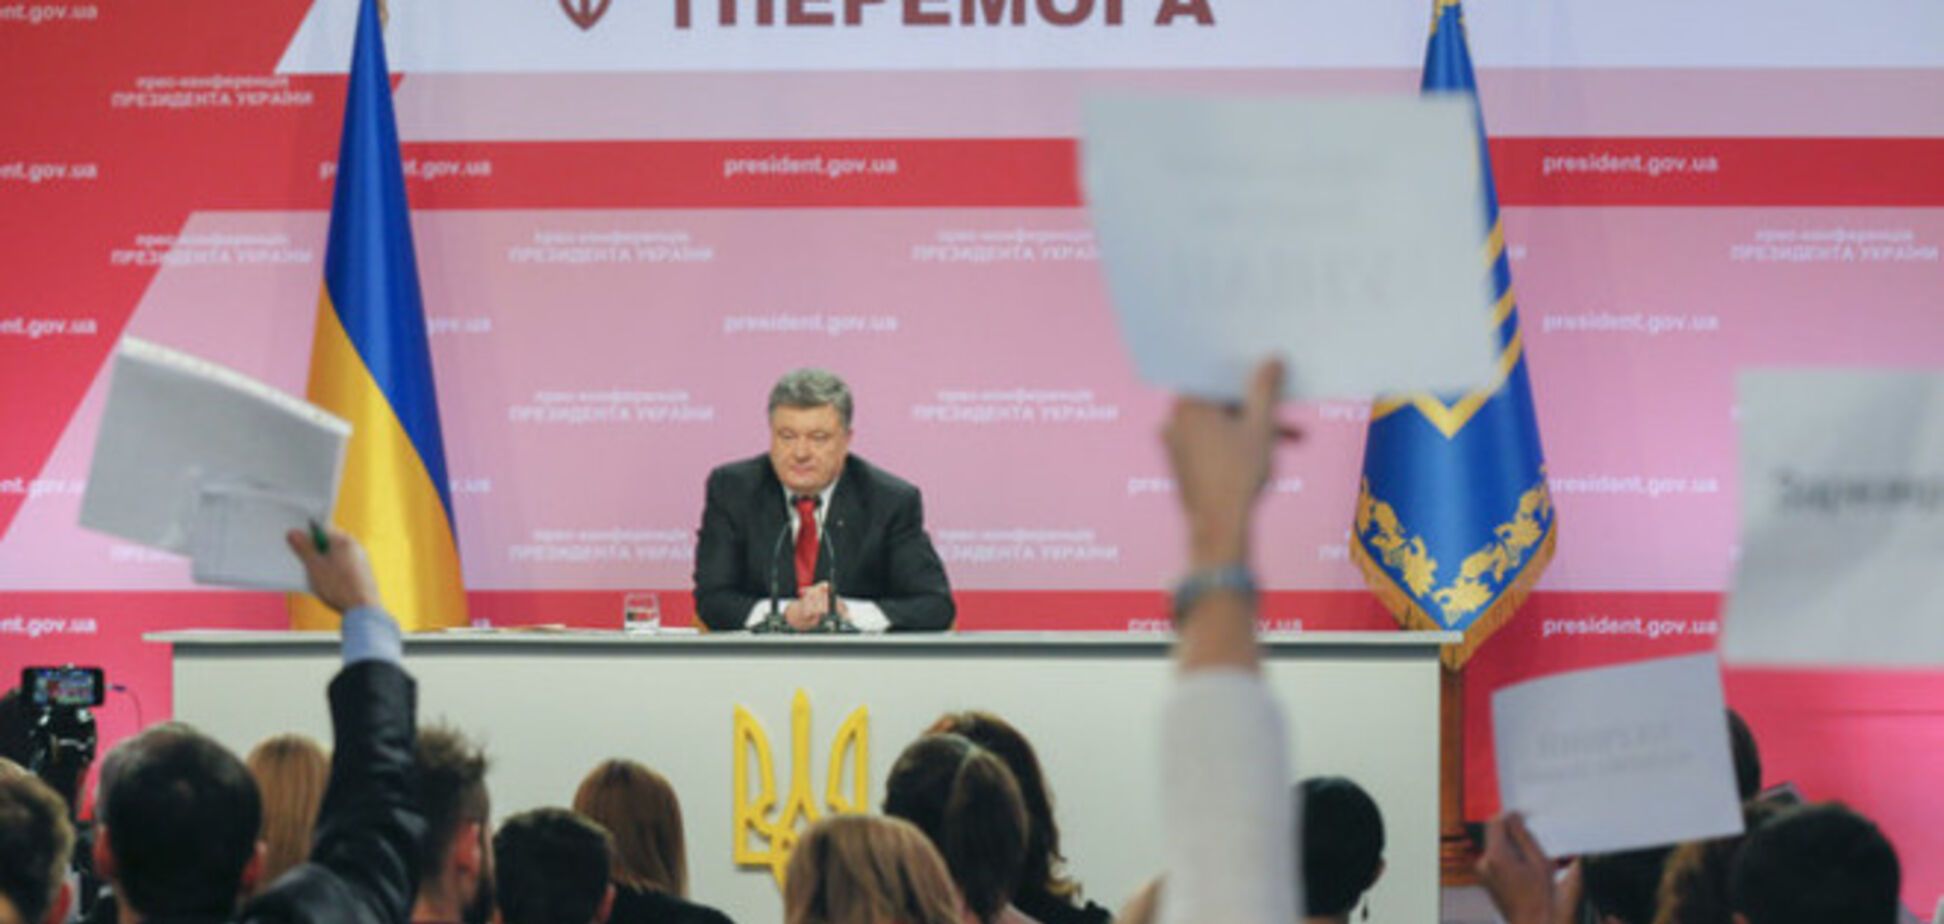 'Прогресса нет': реакция соцсетей и экспертов на пресс-конференцию Порошенко